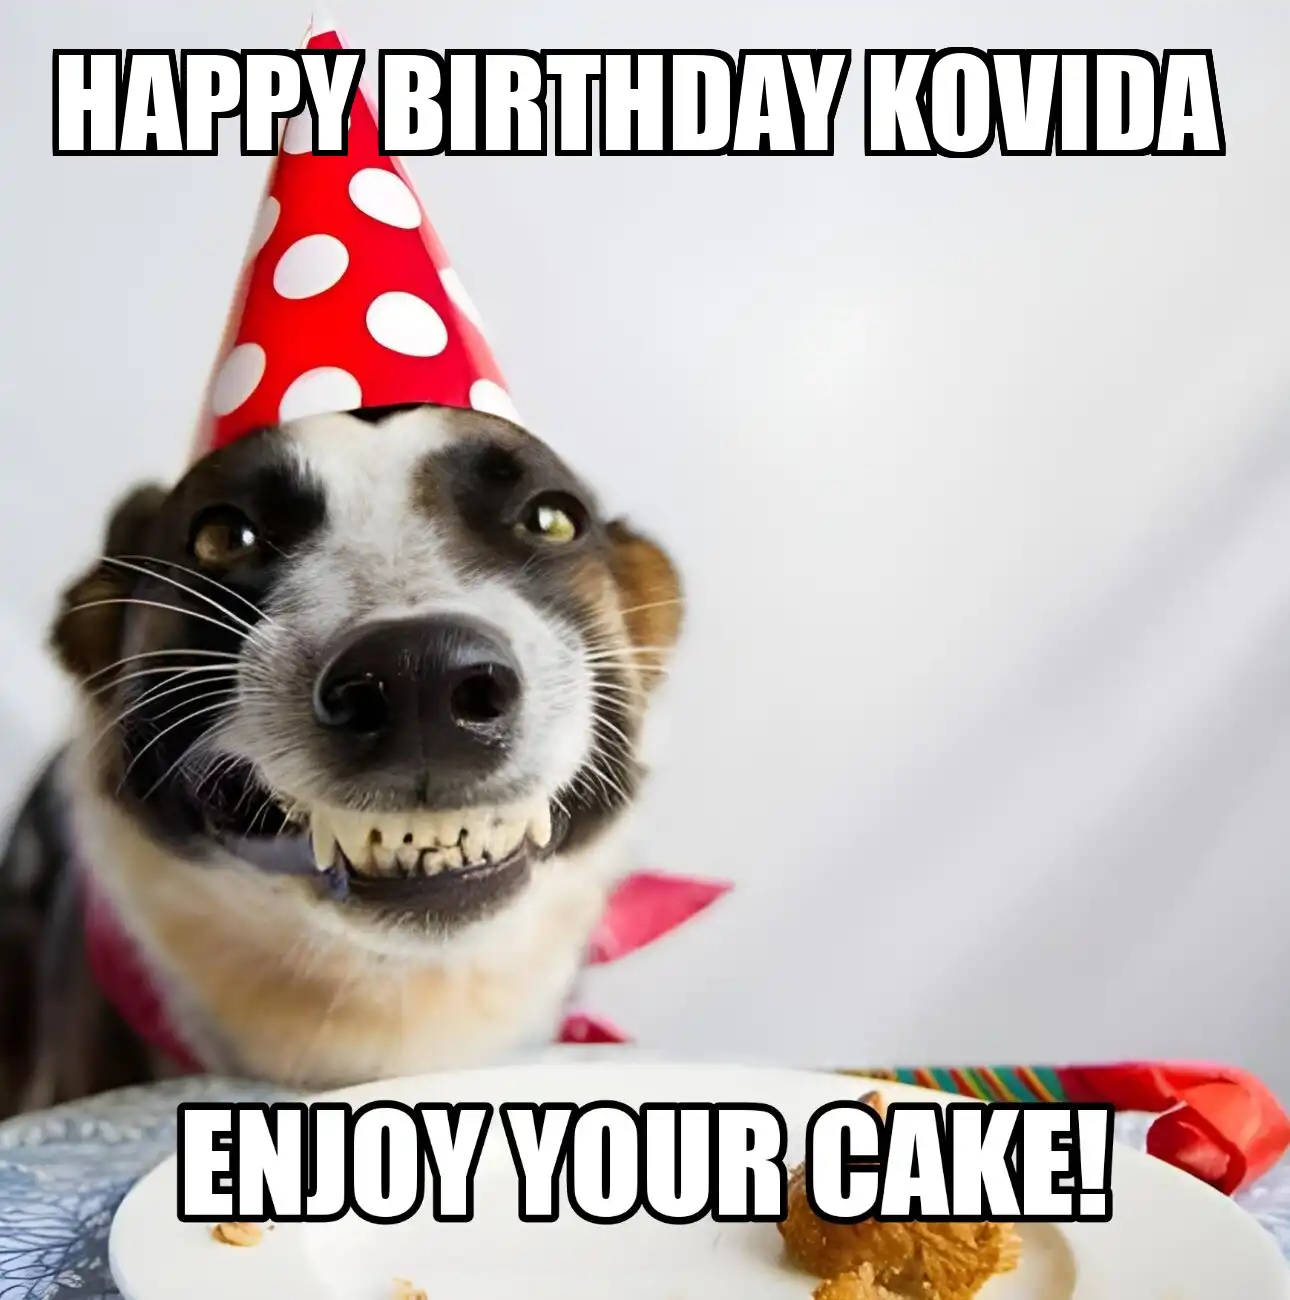 Happy Birthday Kovida Enjoy Your Cake Dog Meme